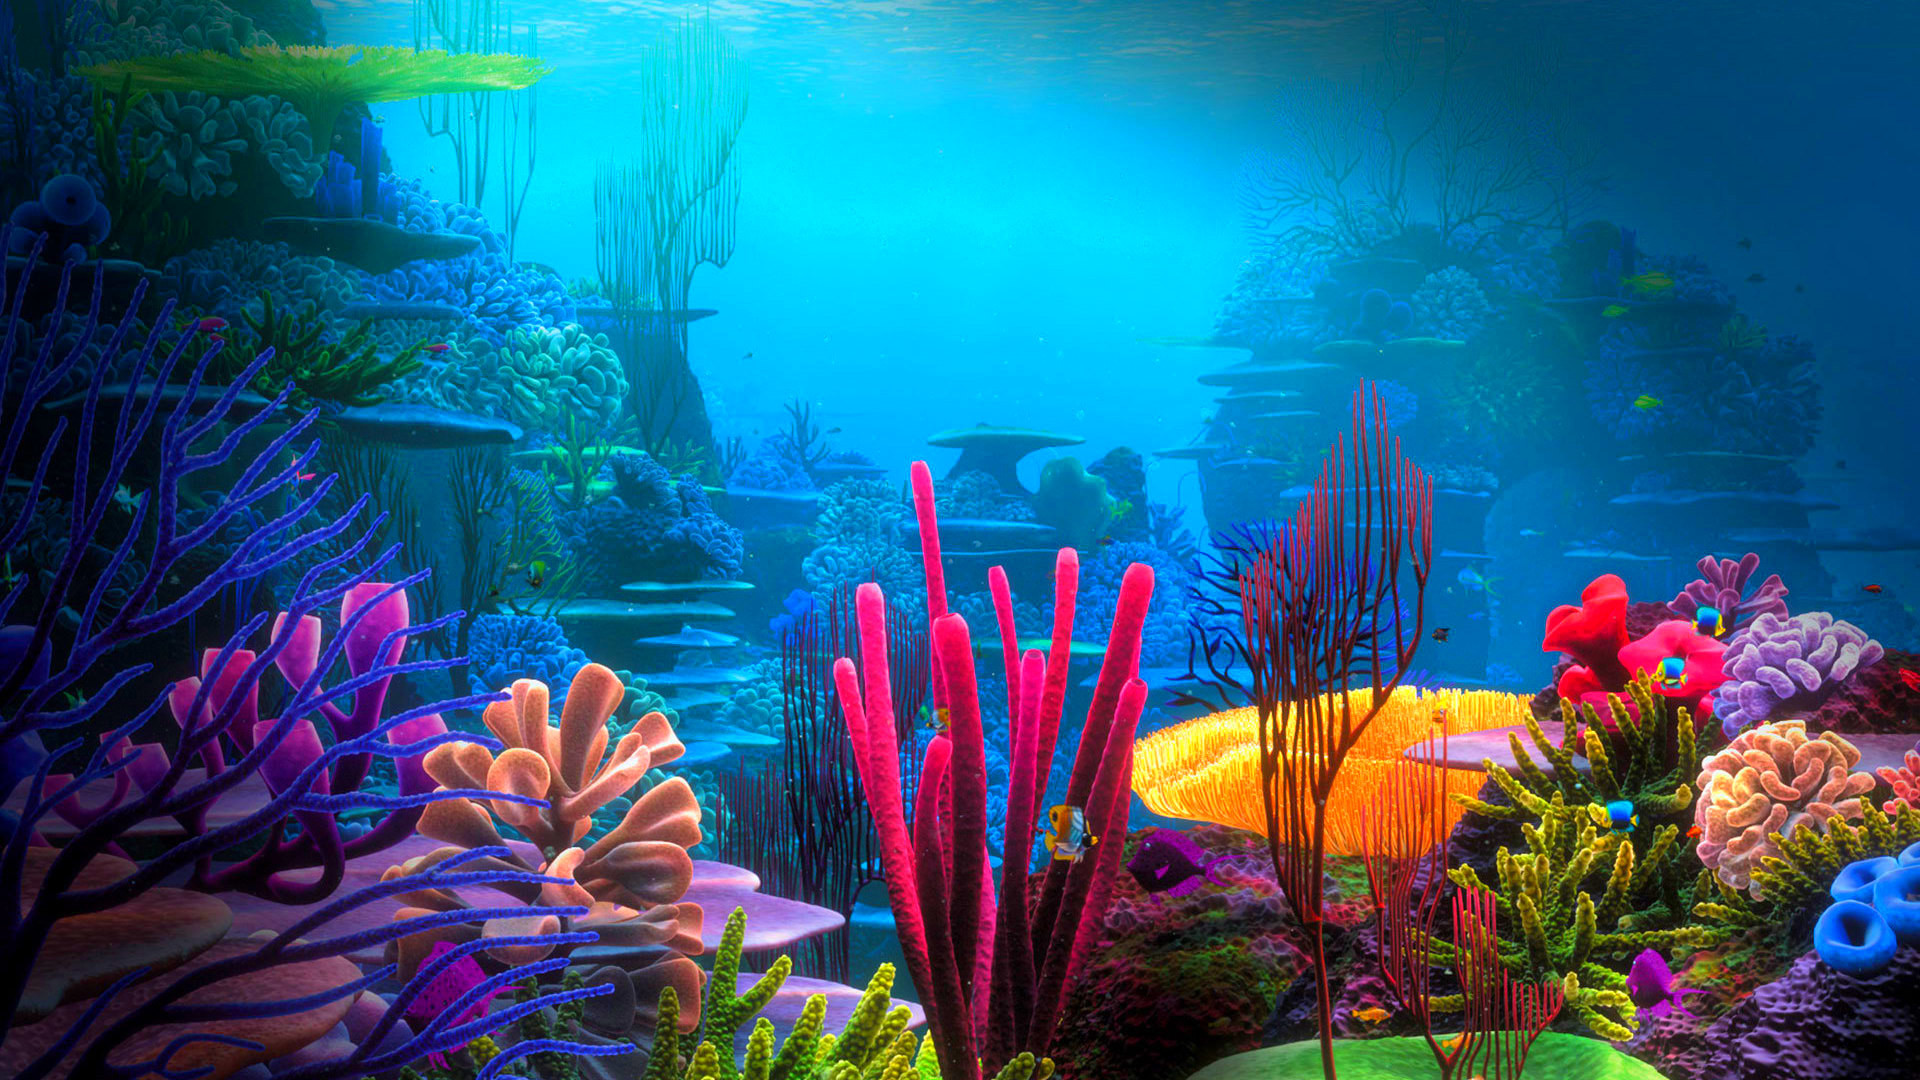 수중 라이브 벽지,자연,수중,산호초,민물 수족관,암초